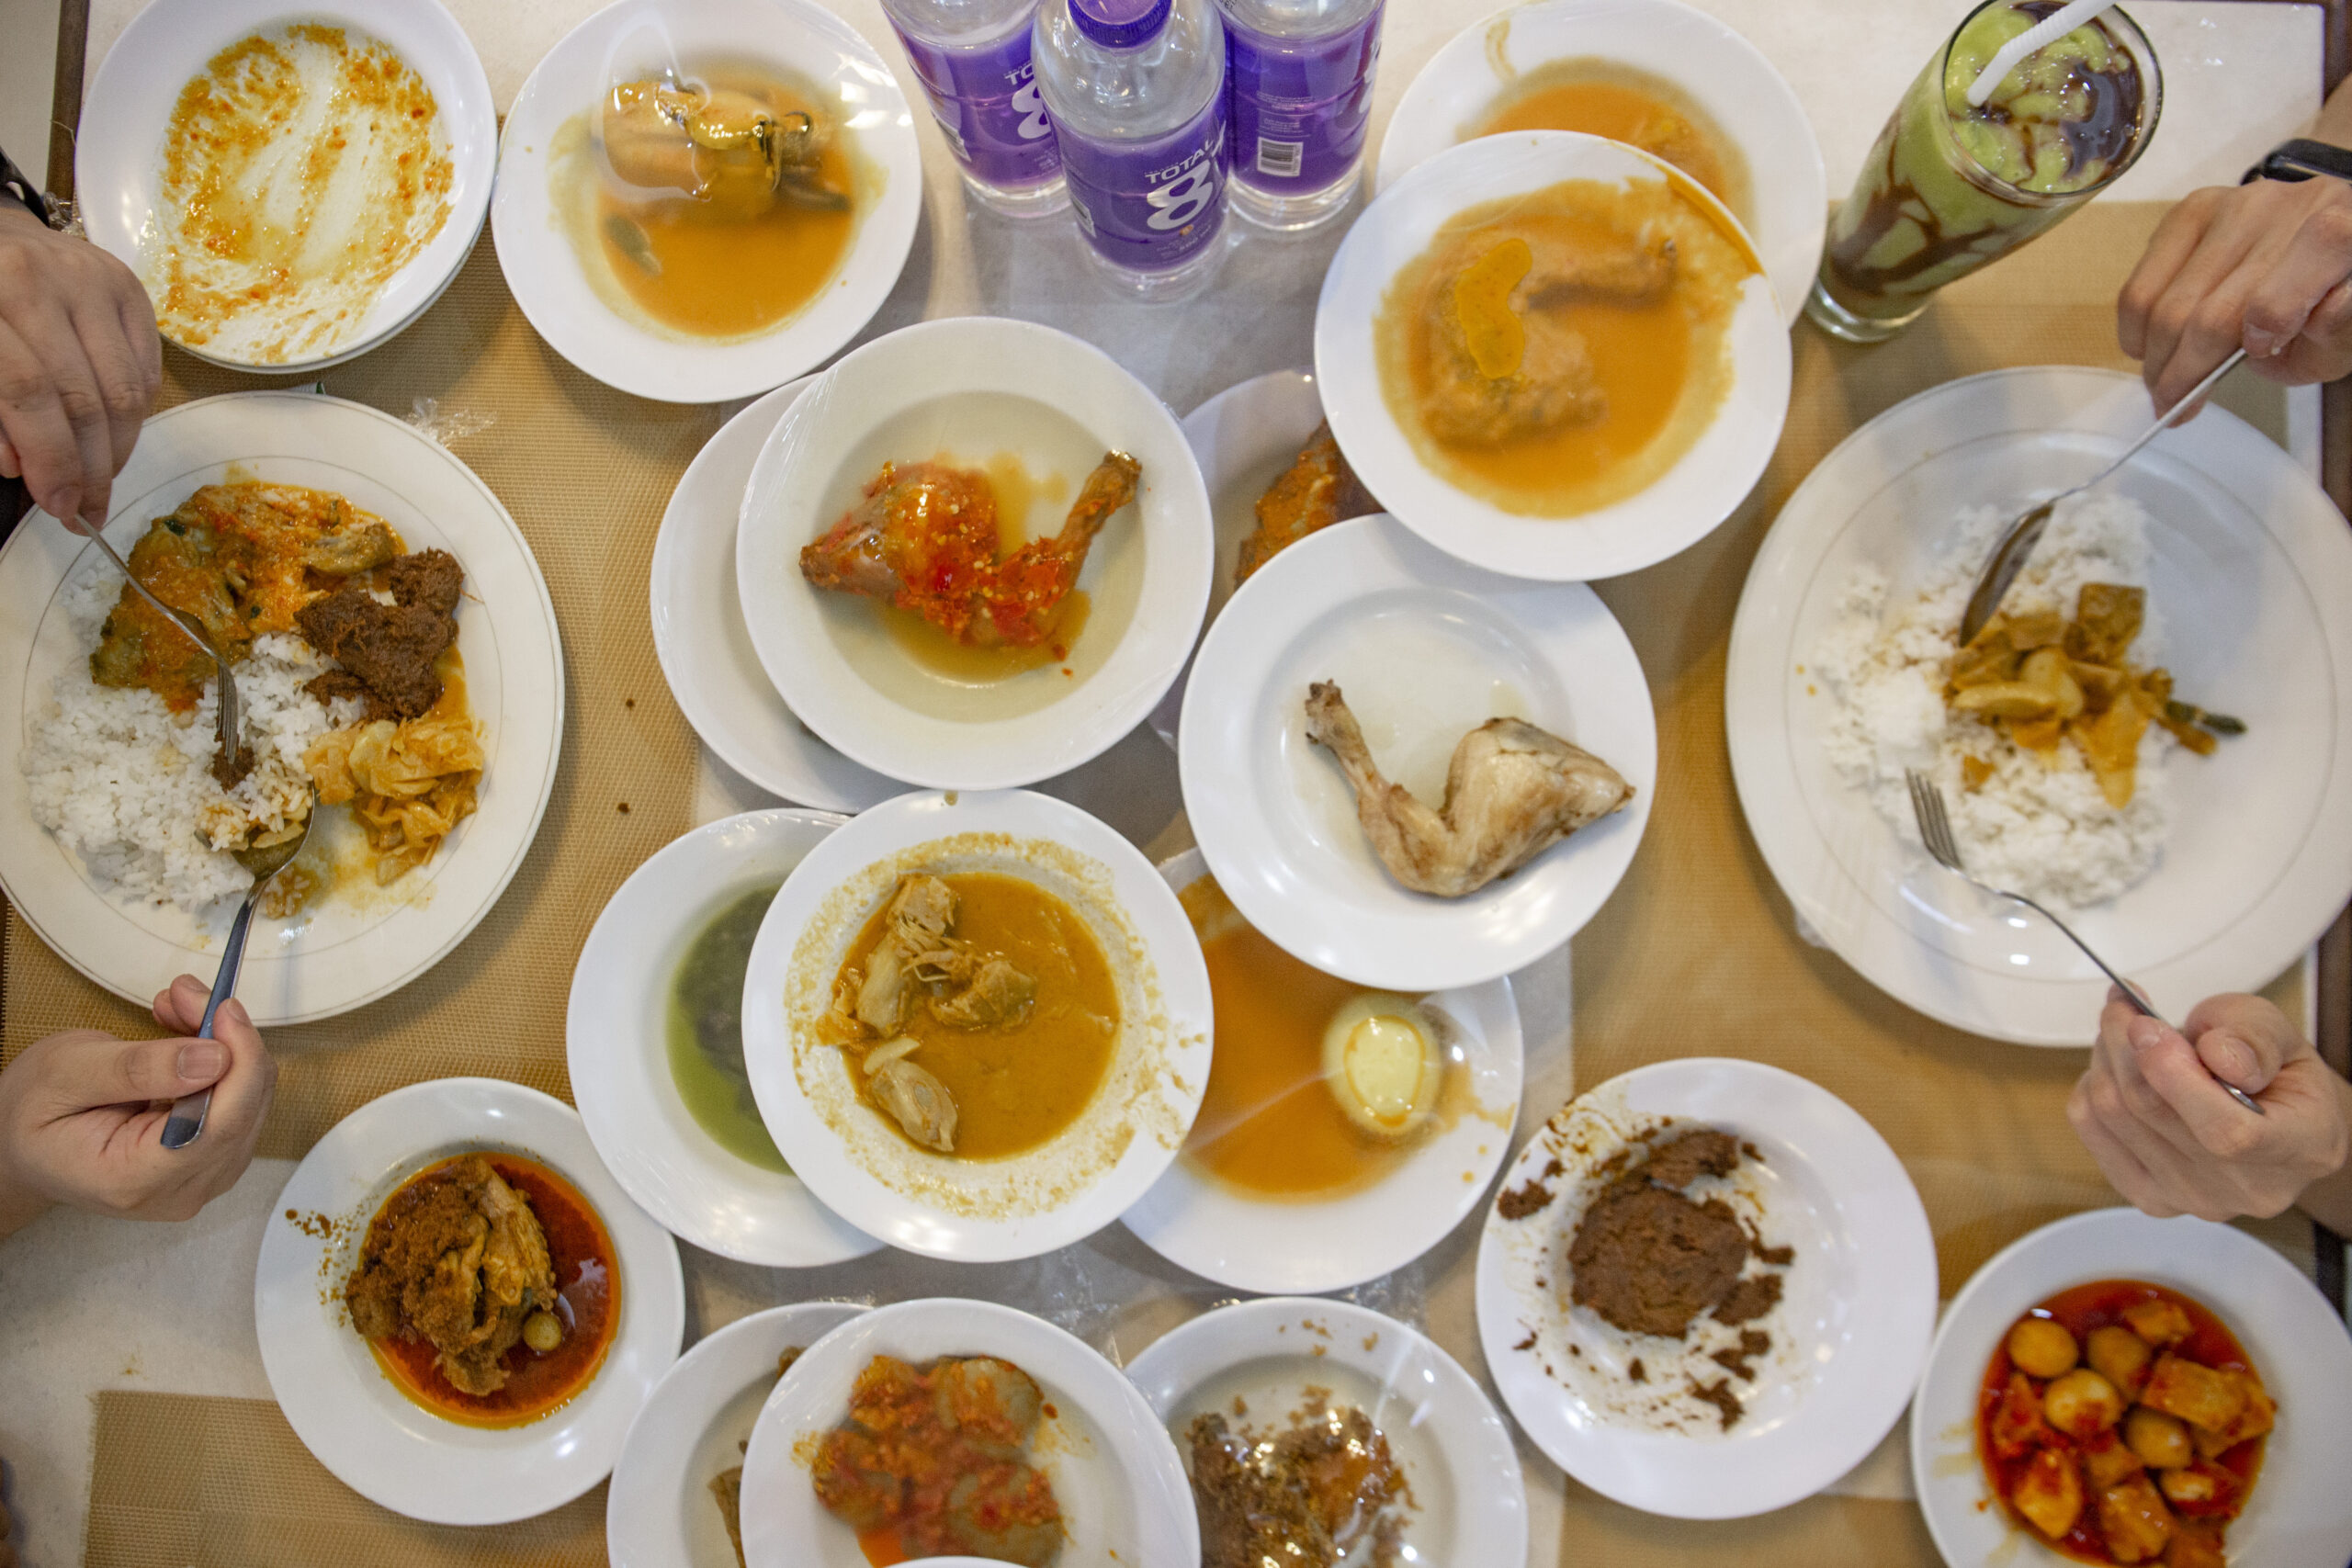 Batam food places - Sederhana overall